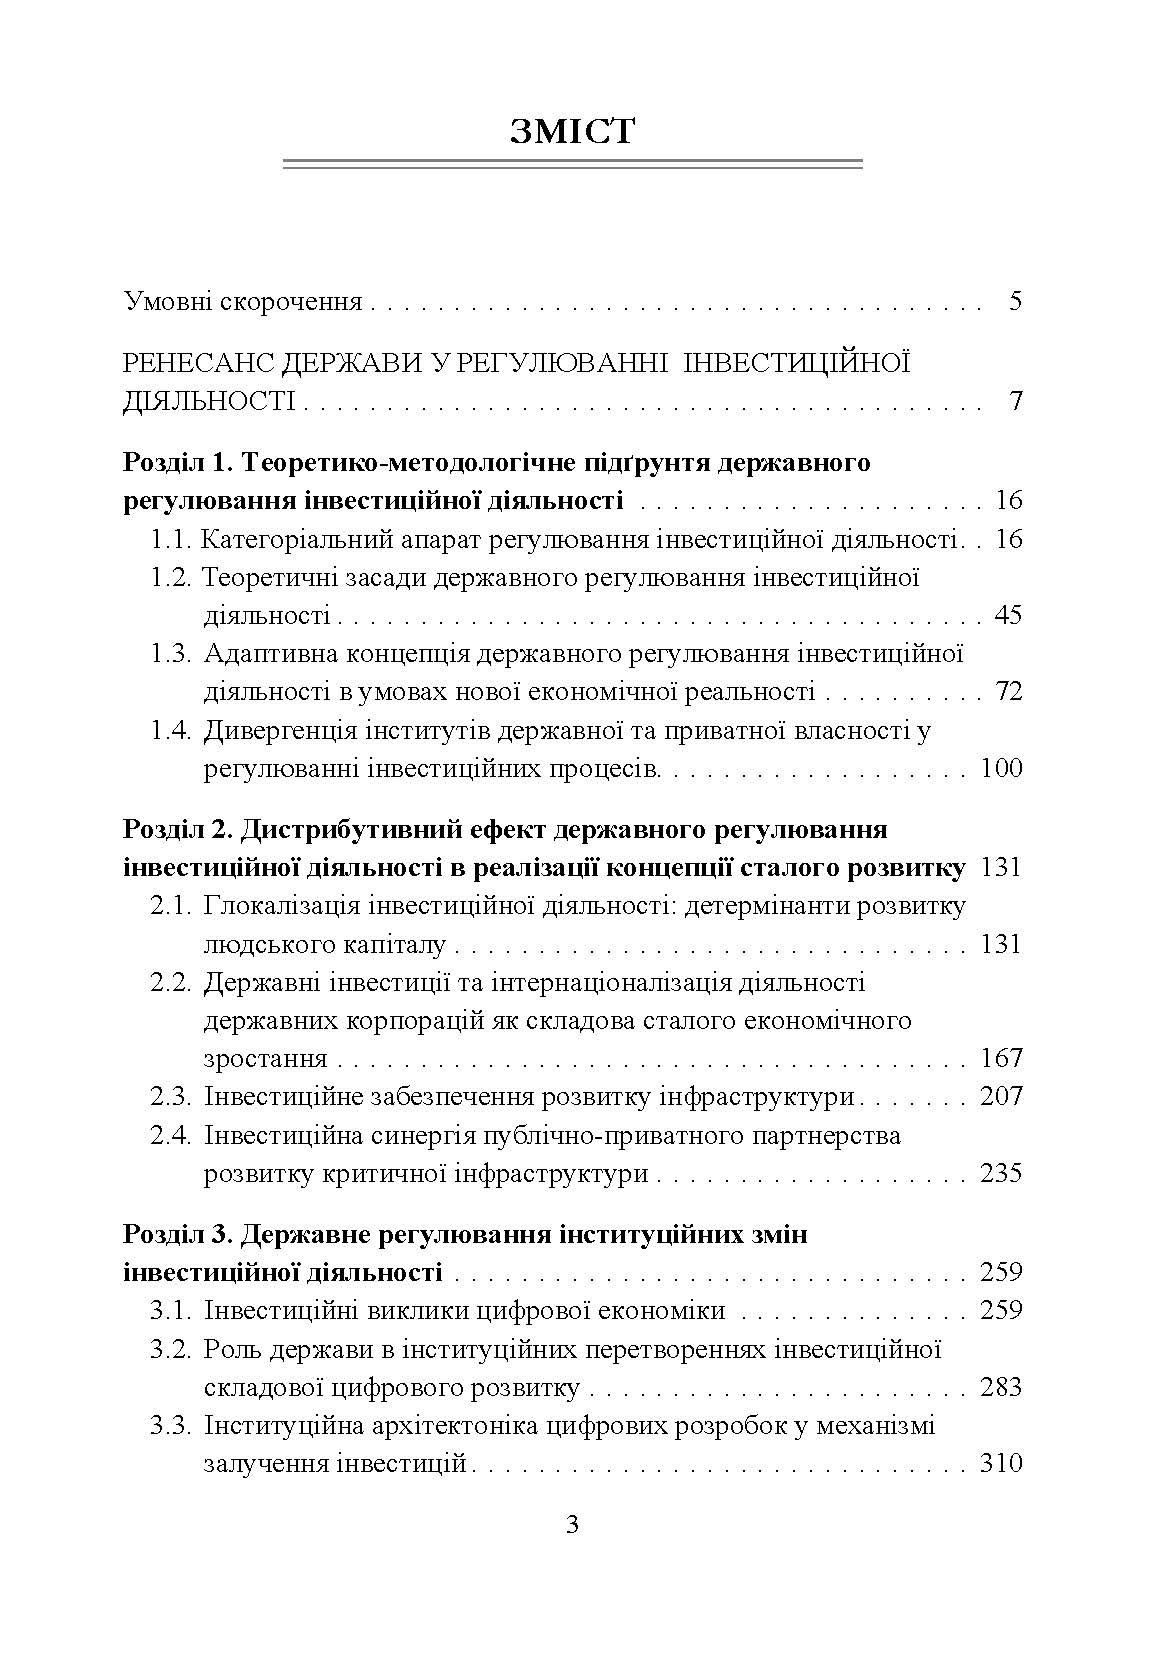 Державне регулювання інвестиційної діяльності (2020 год)). Автор — Корнєєва Ю.В.. 